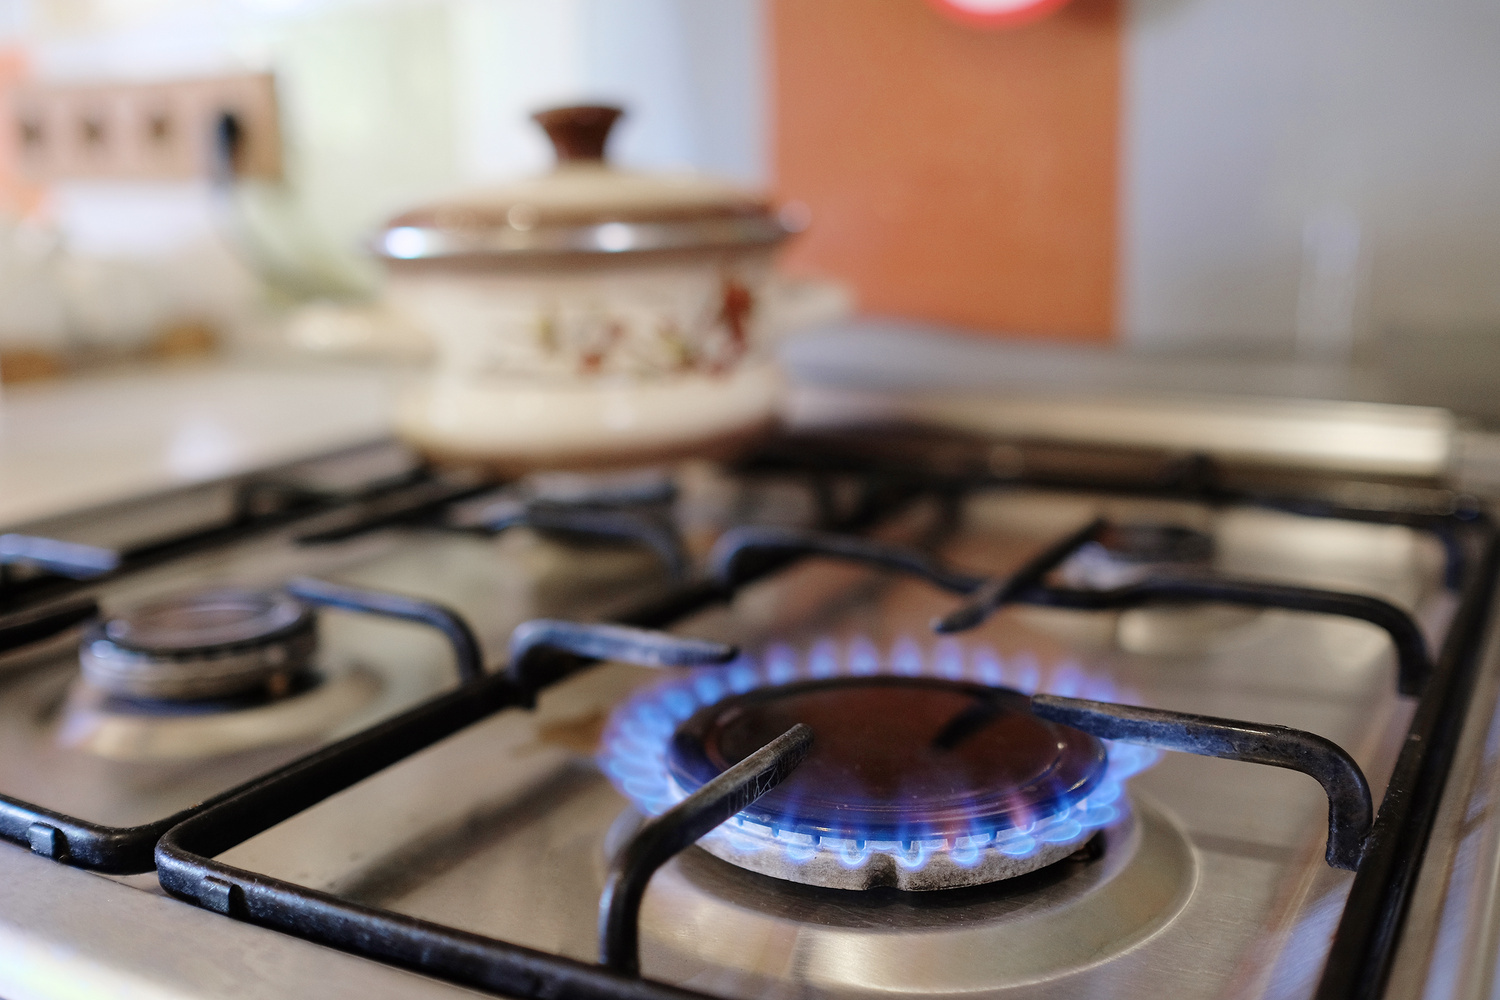 A closeup of a lit gas stove burner